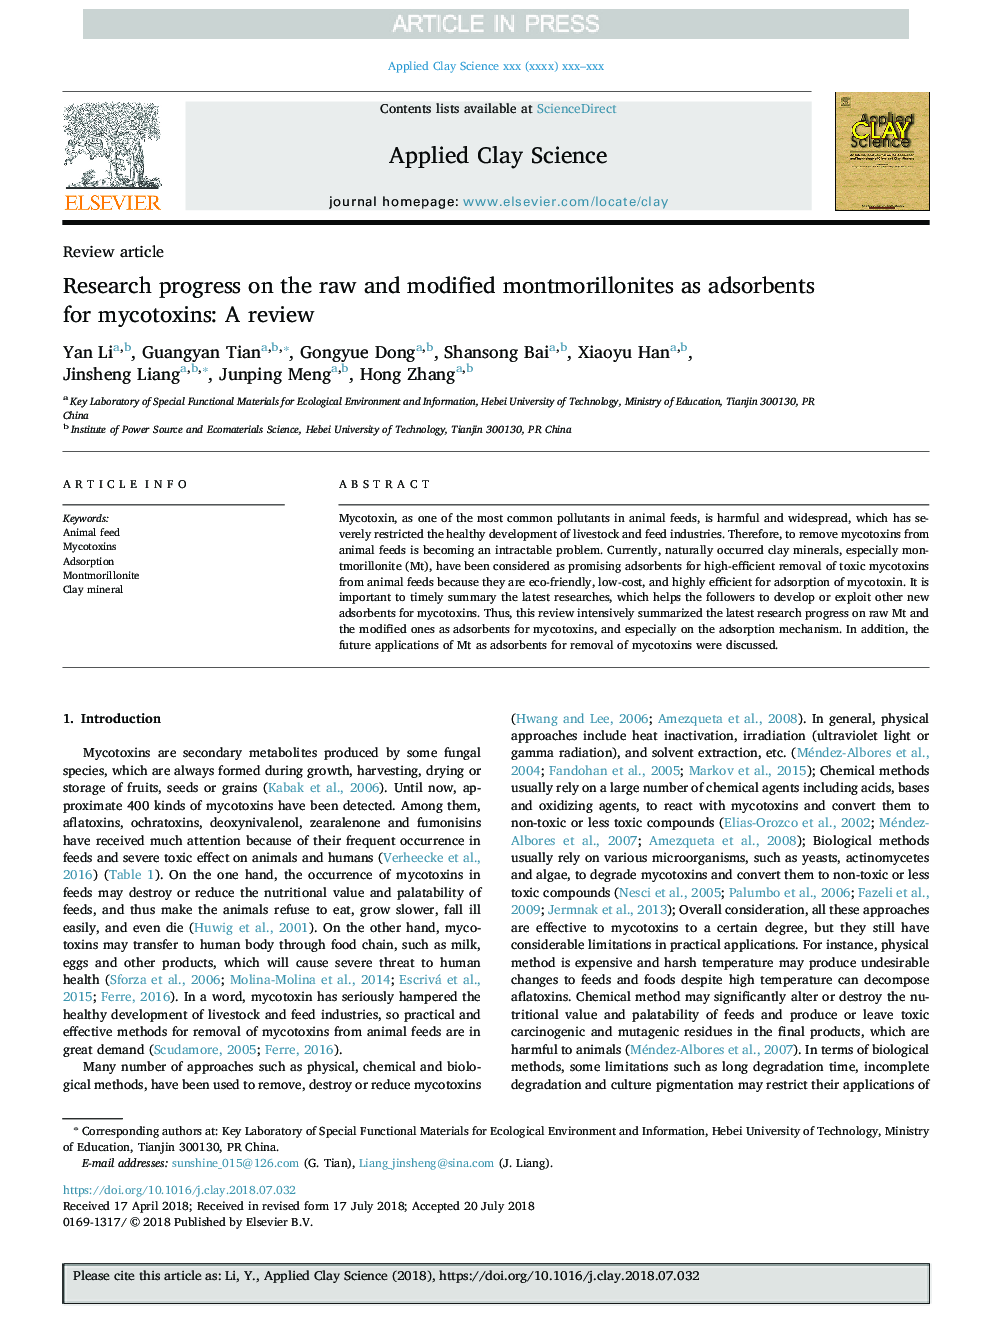 پیشرفت تحقیق در مورد مونتموریلونیت های خام و اصلاح شده به عنوان جاذبهای برای میکوکوتوکسین: بررسی 